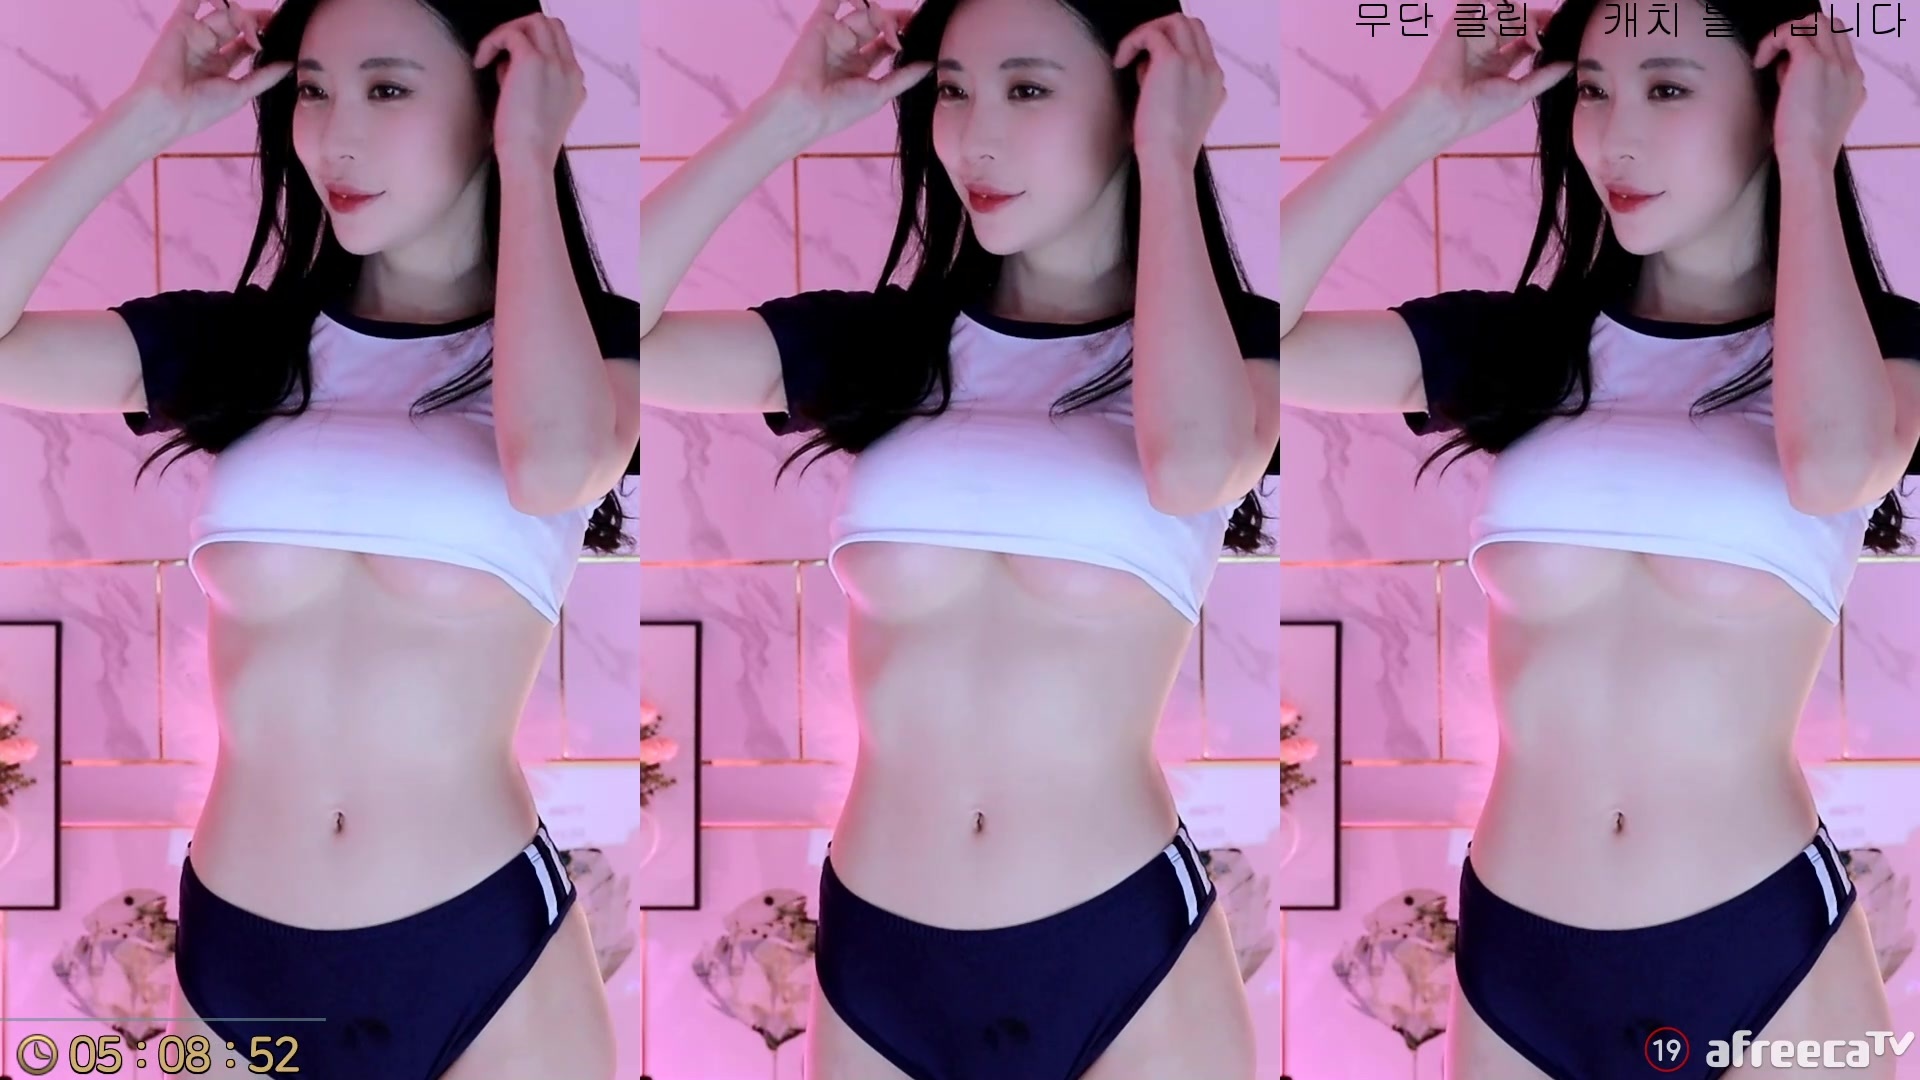 AfreecaTV Dance Girl @Kyo Tsai Seductive Hot Dance Mini Collection (4)